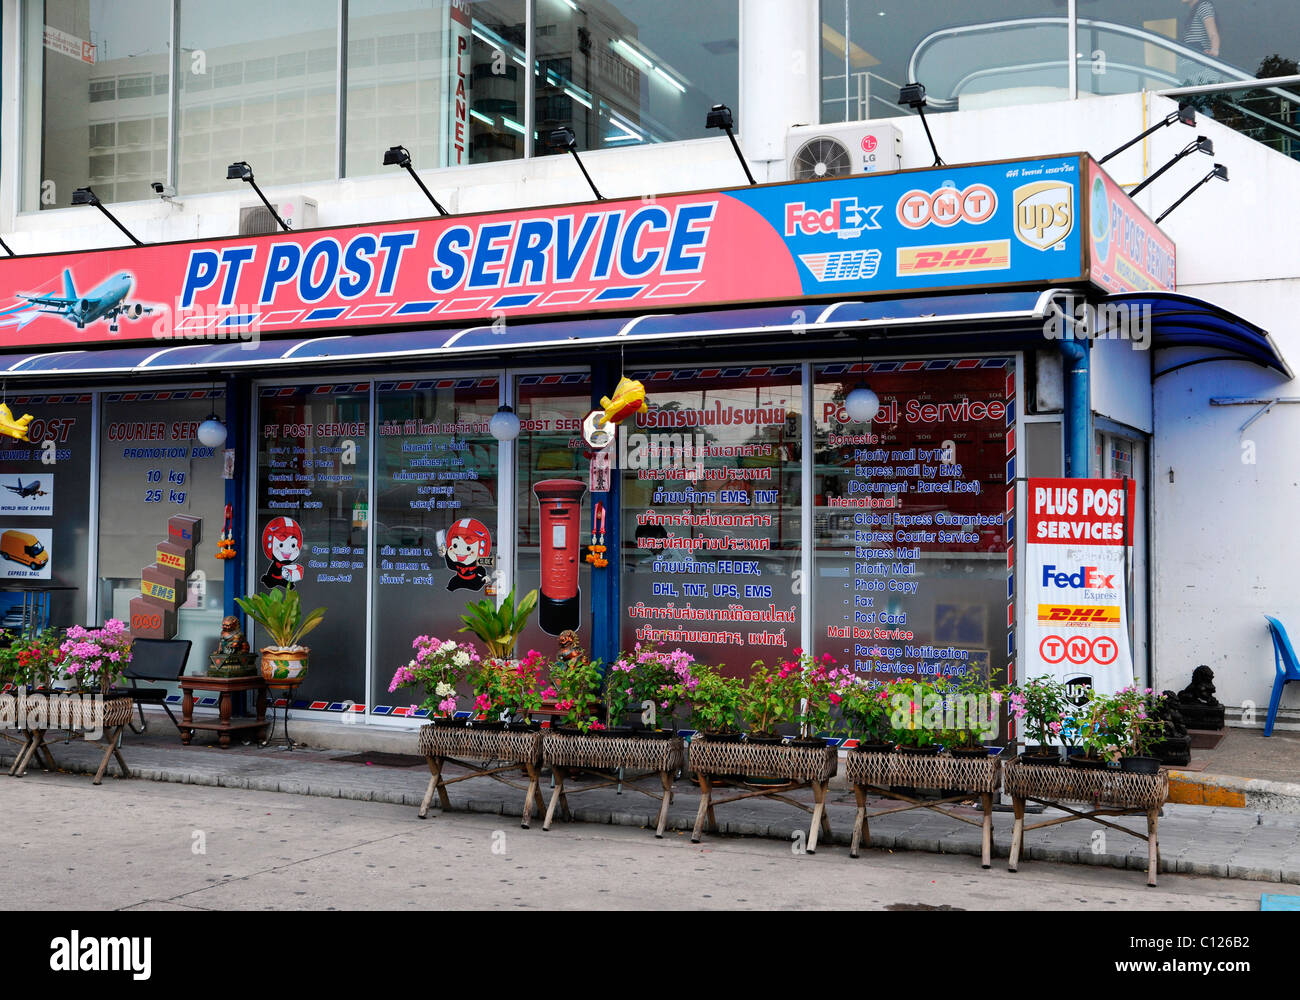 PT Post Service immeuble, Thailande, Asie Banque D'Images